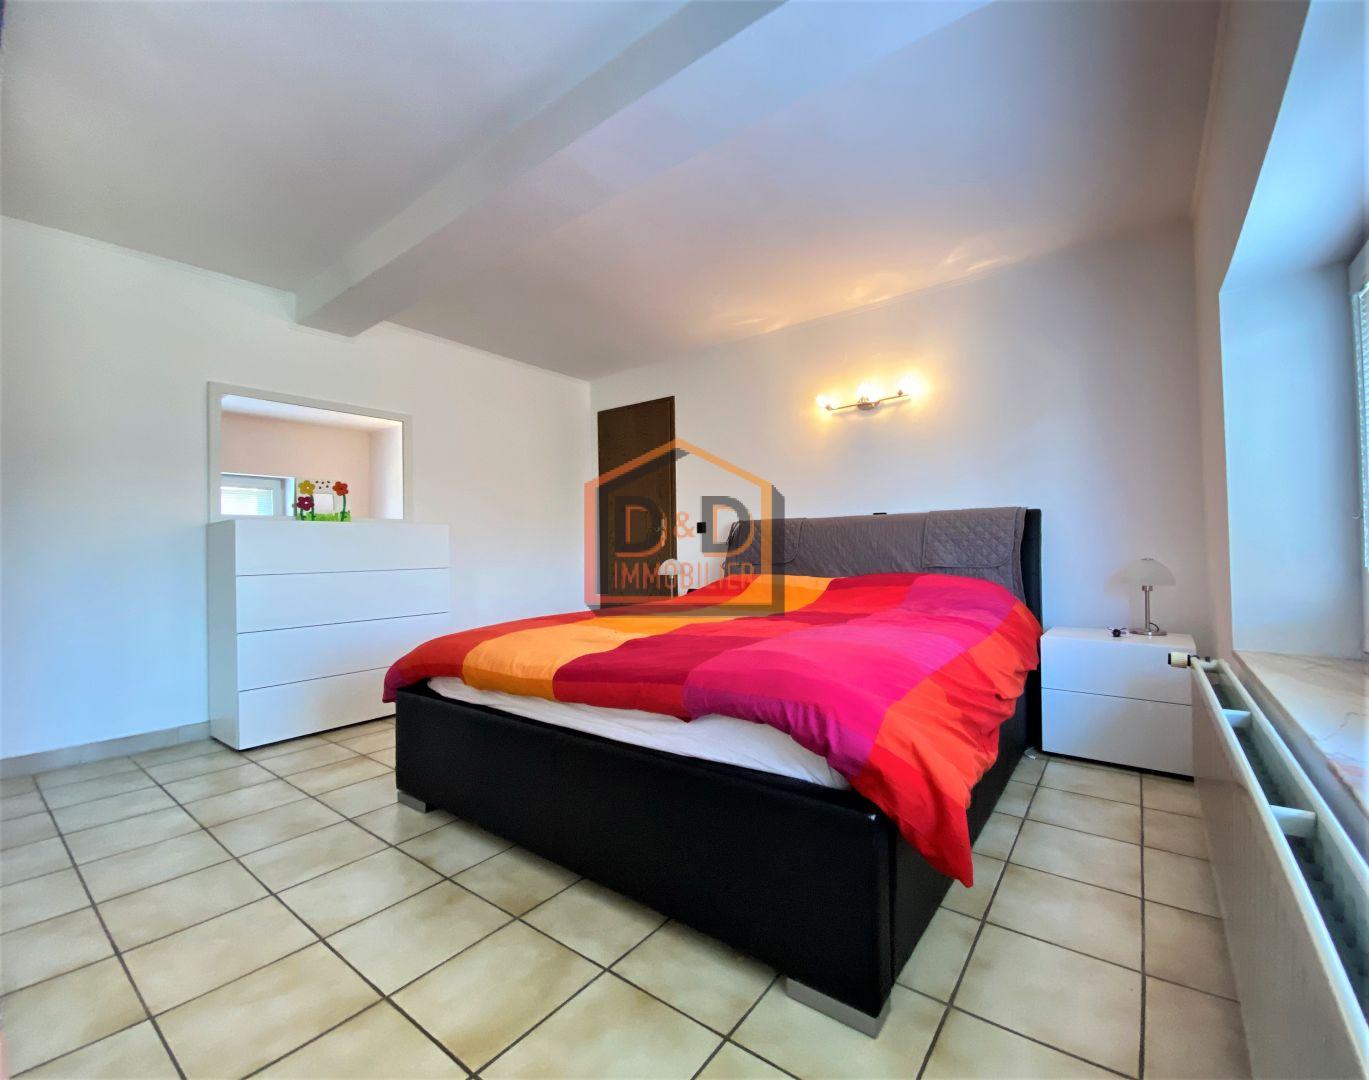 Maison à Bettembourg, 215 m², 4 chambres, 1 salle de bain, 2 garages, 887 920 €